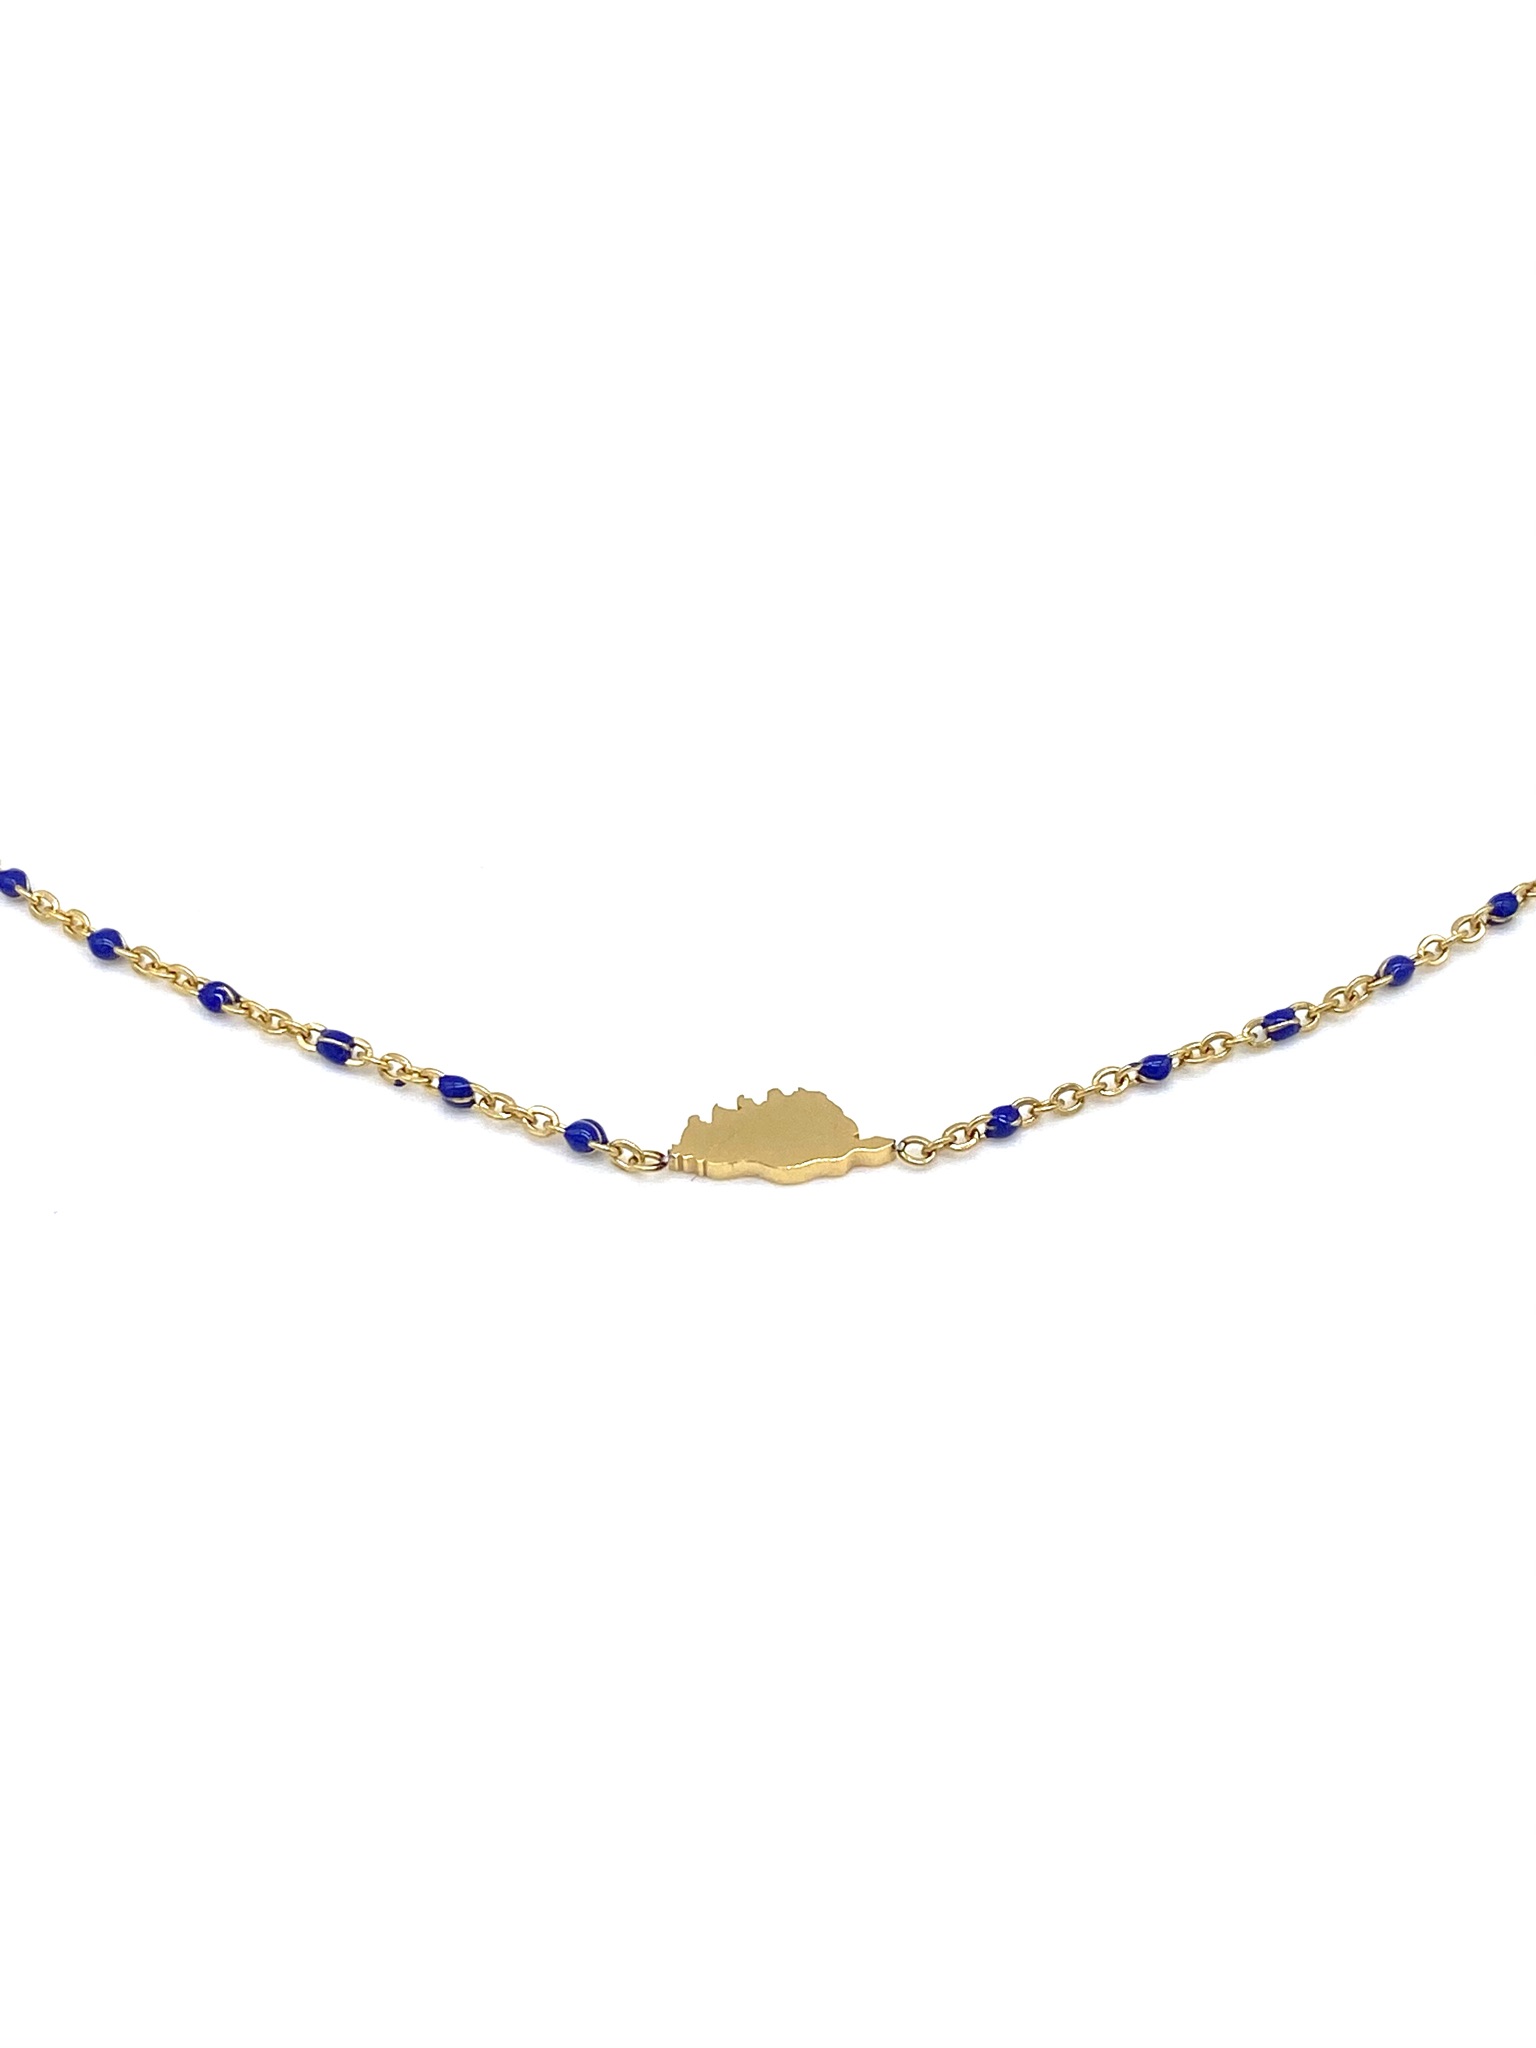 collier-perles-bleumarine-corse-doré